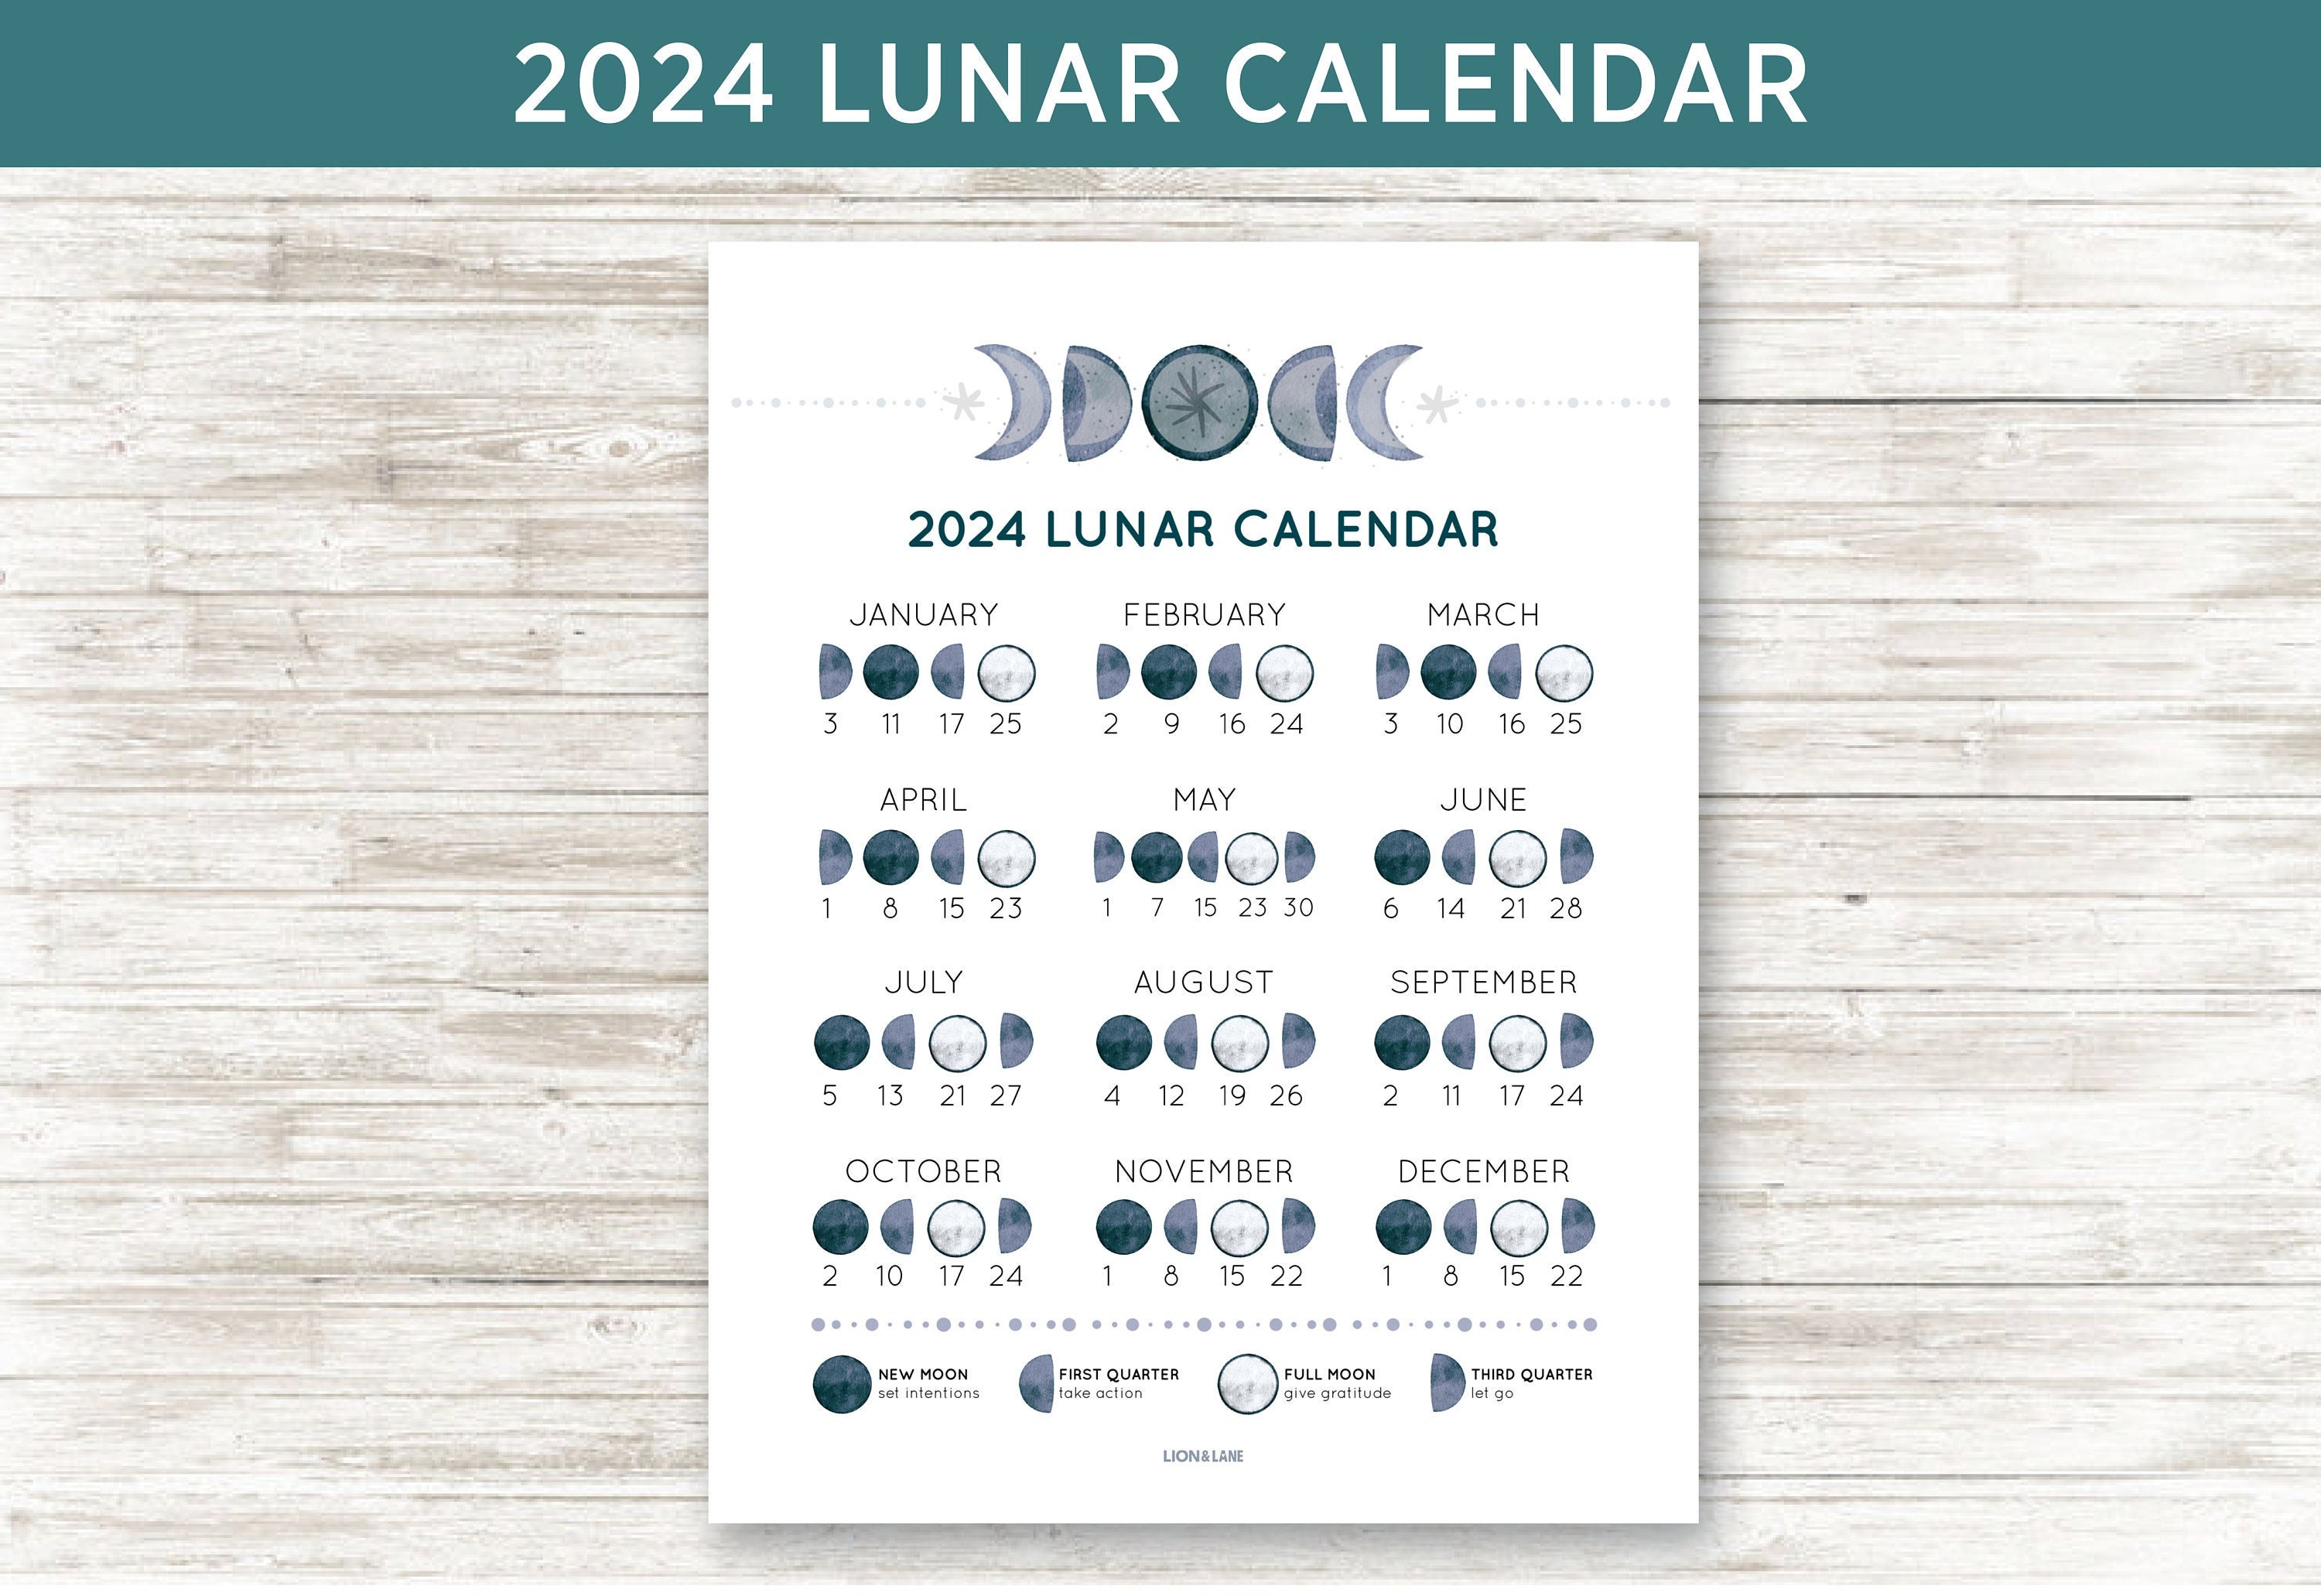 Agenda Calendario Lunar 2024 